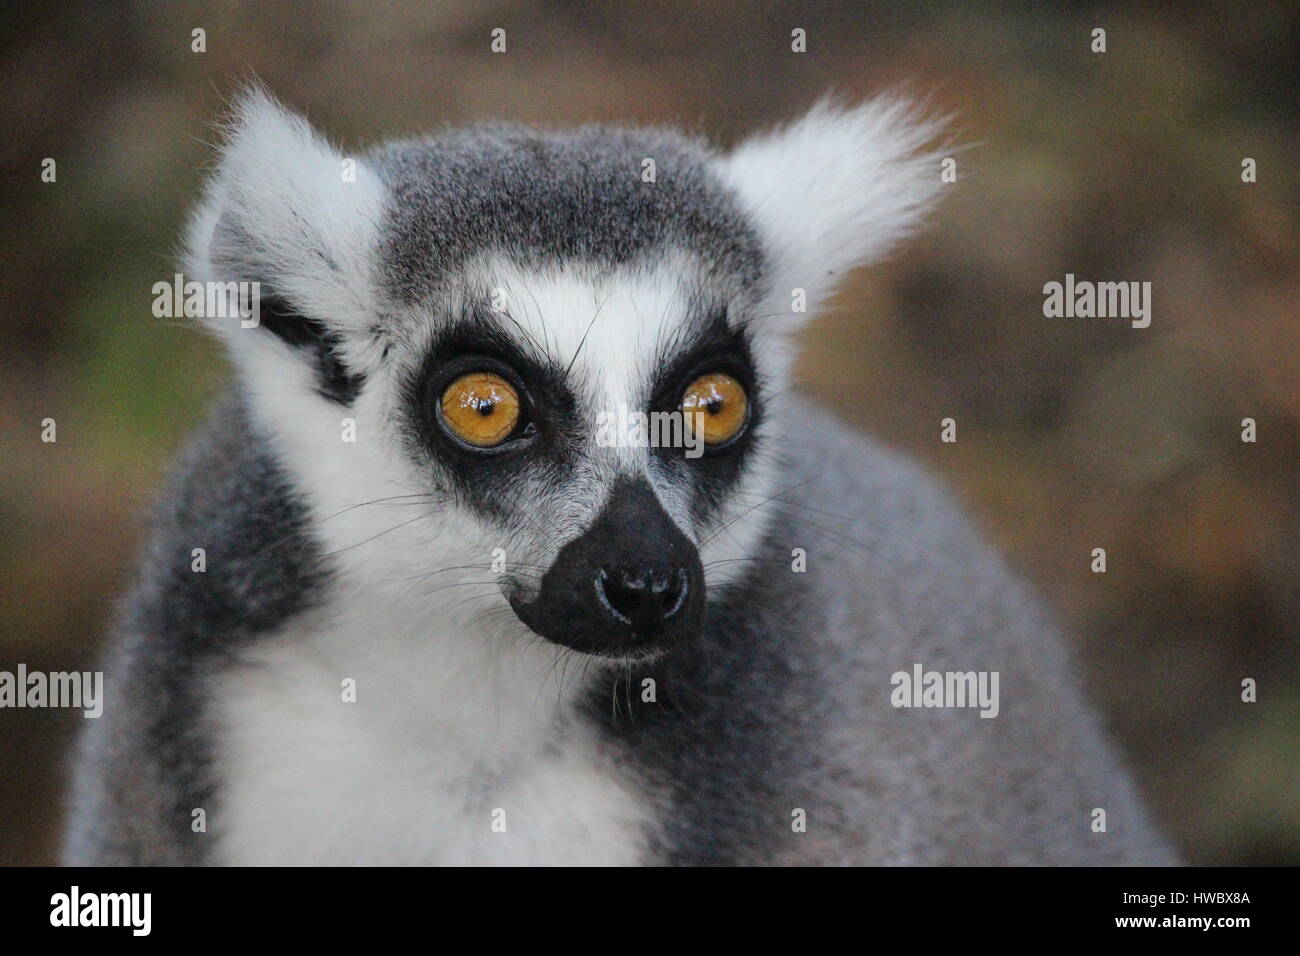 Dagli occhi brillanti e anello tailed: Lemur prese a West Midlands Safari Park Foto Stock